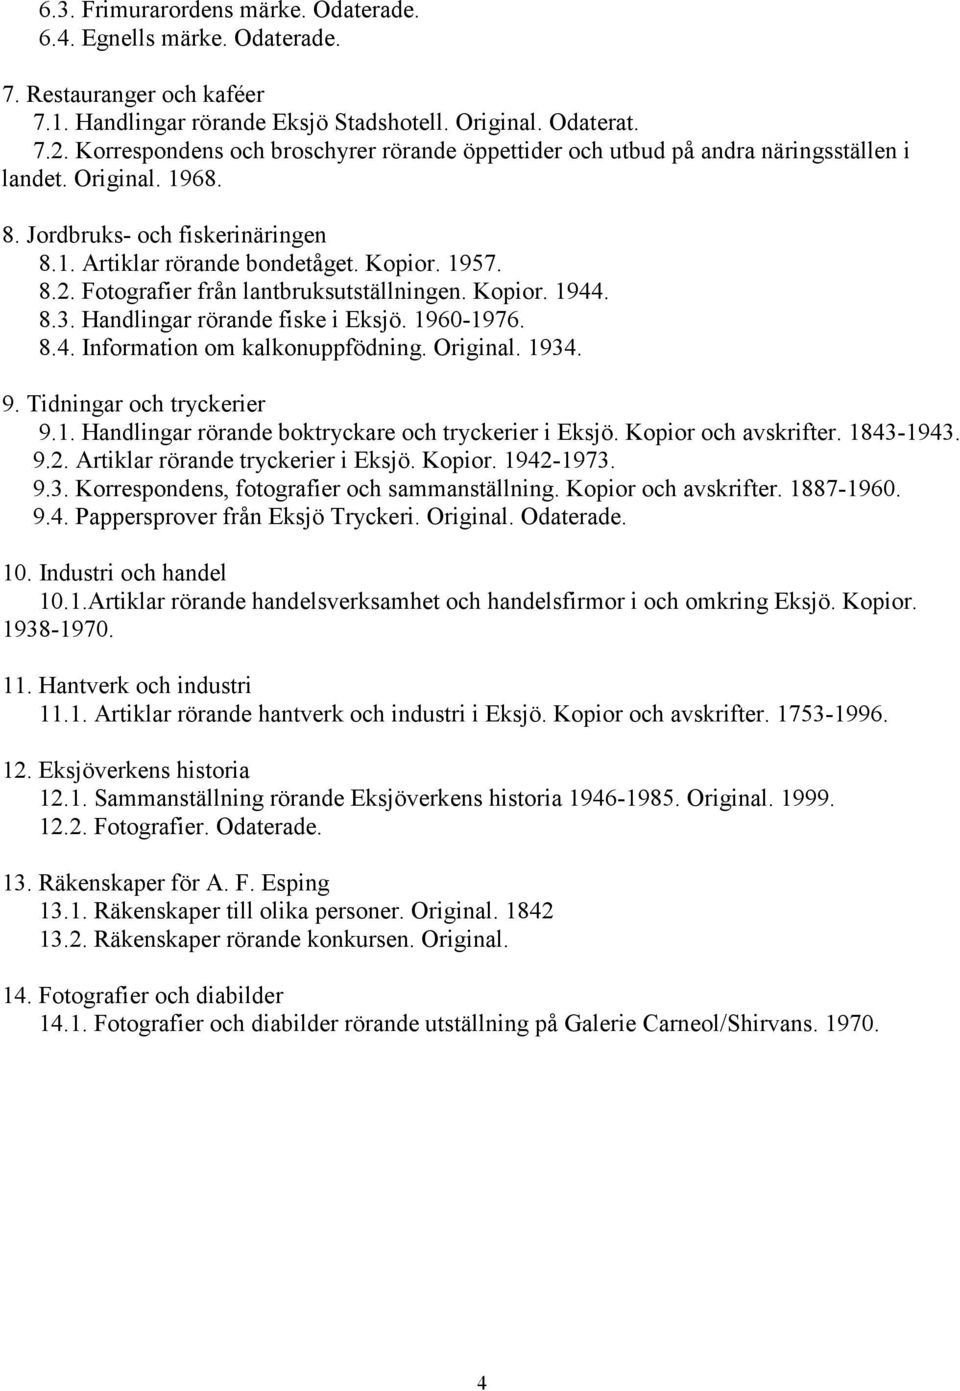 Fotografier från lantbruksutställningen. Kopior. 1944. 8.3. Handlingar rörande fiske i Eksjö. 1960-1976. 8.4. Information om kalkonuppfödning. Original. 1934. 9. Tidningar och tryckerier 9.1. Handlingar rörande boktryckare och tryckerier i Eksjö.